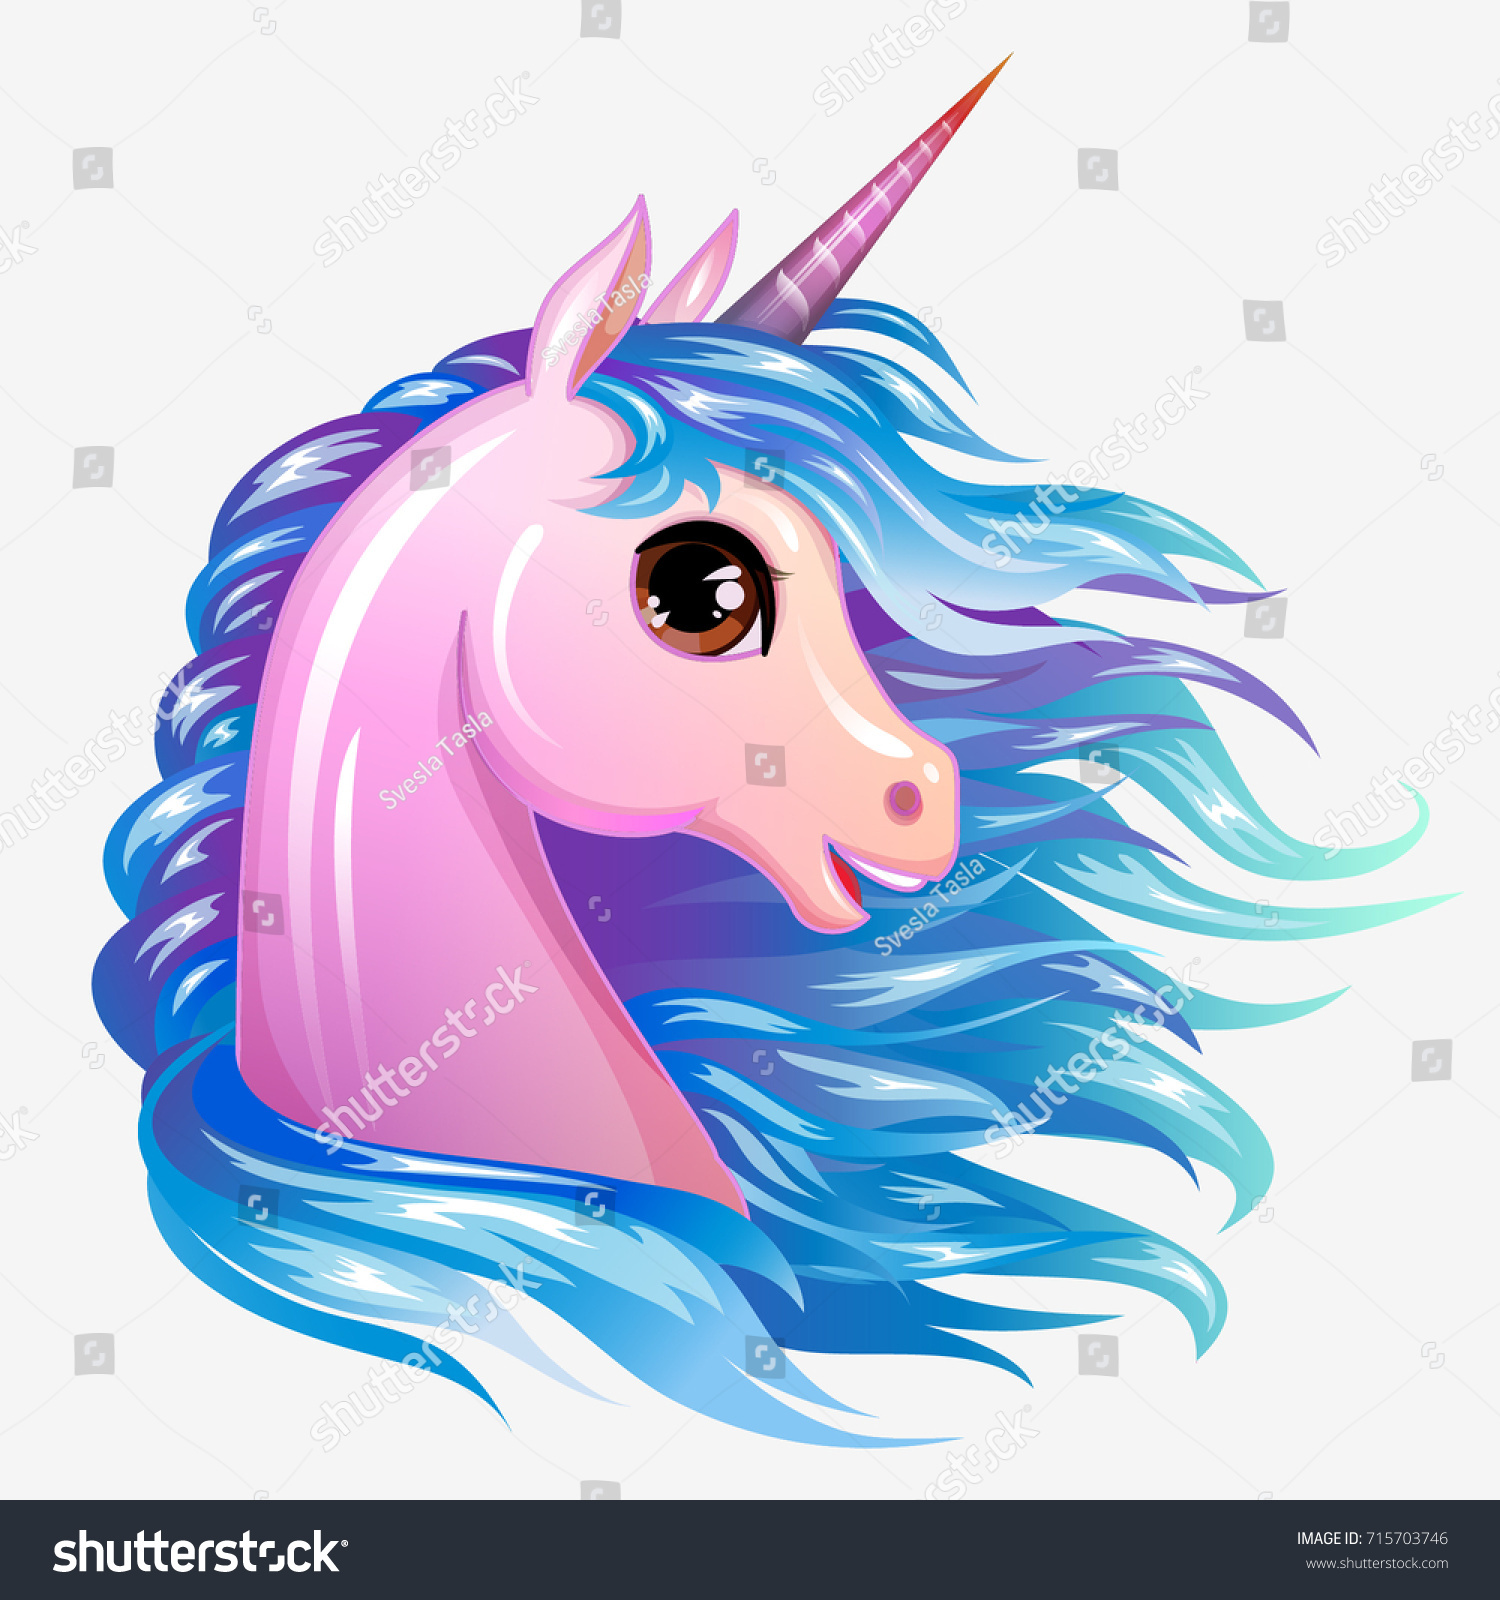 Unicorn Cute Magic Vector Character Magic Stock Vector (Royalty Free ...